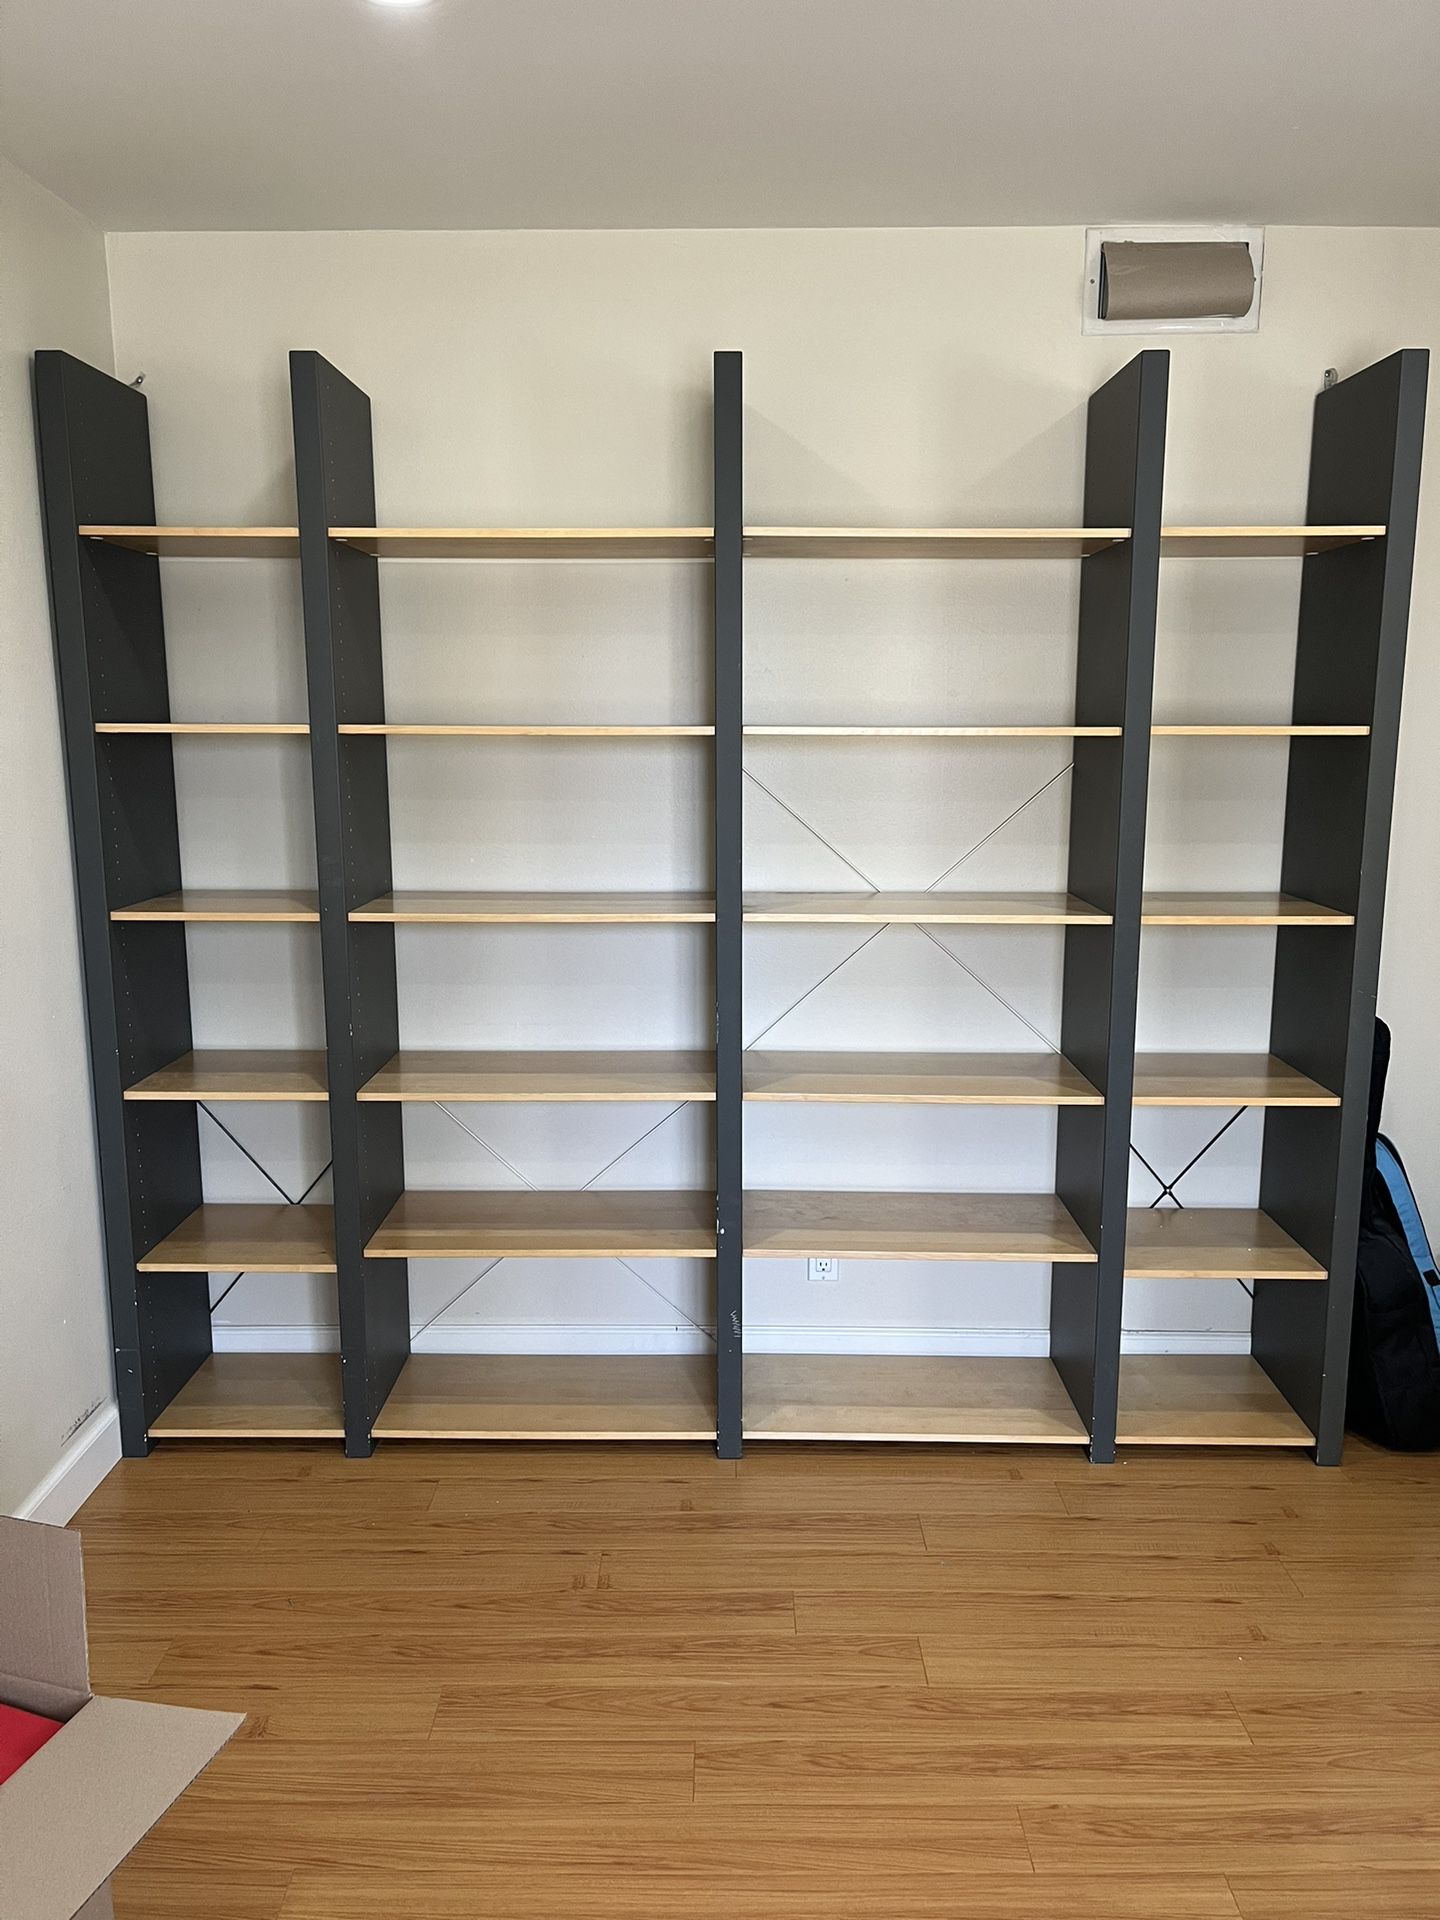 IKEA Bookshelf